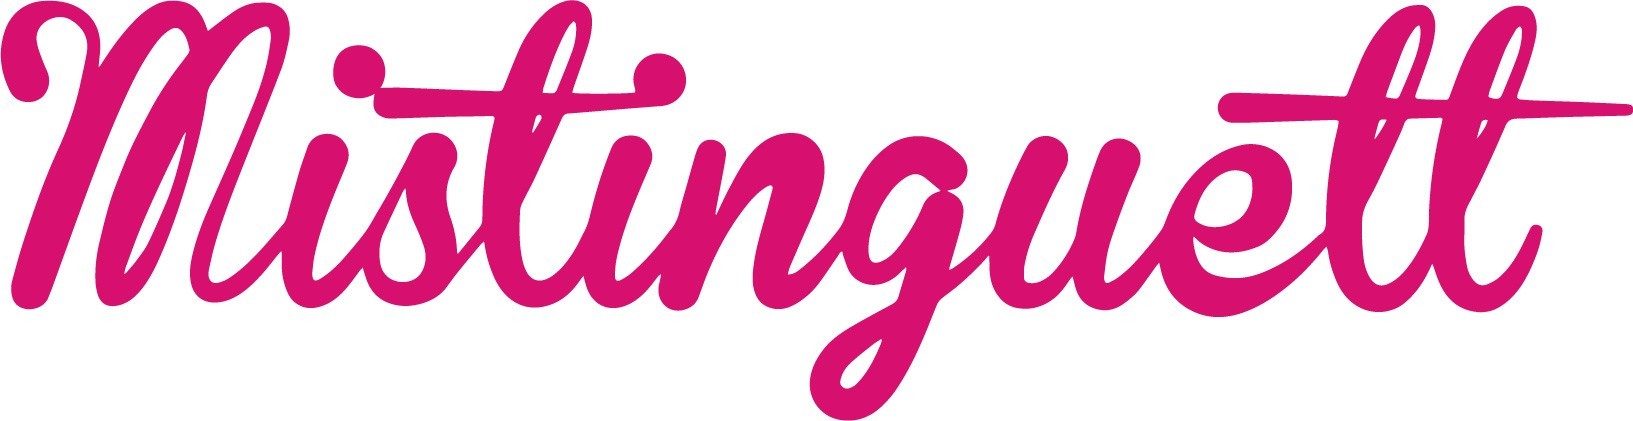 logo-mistinguett